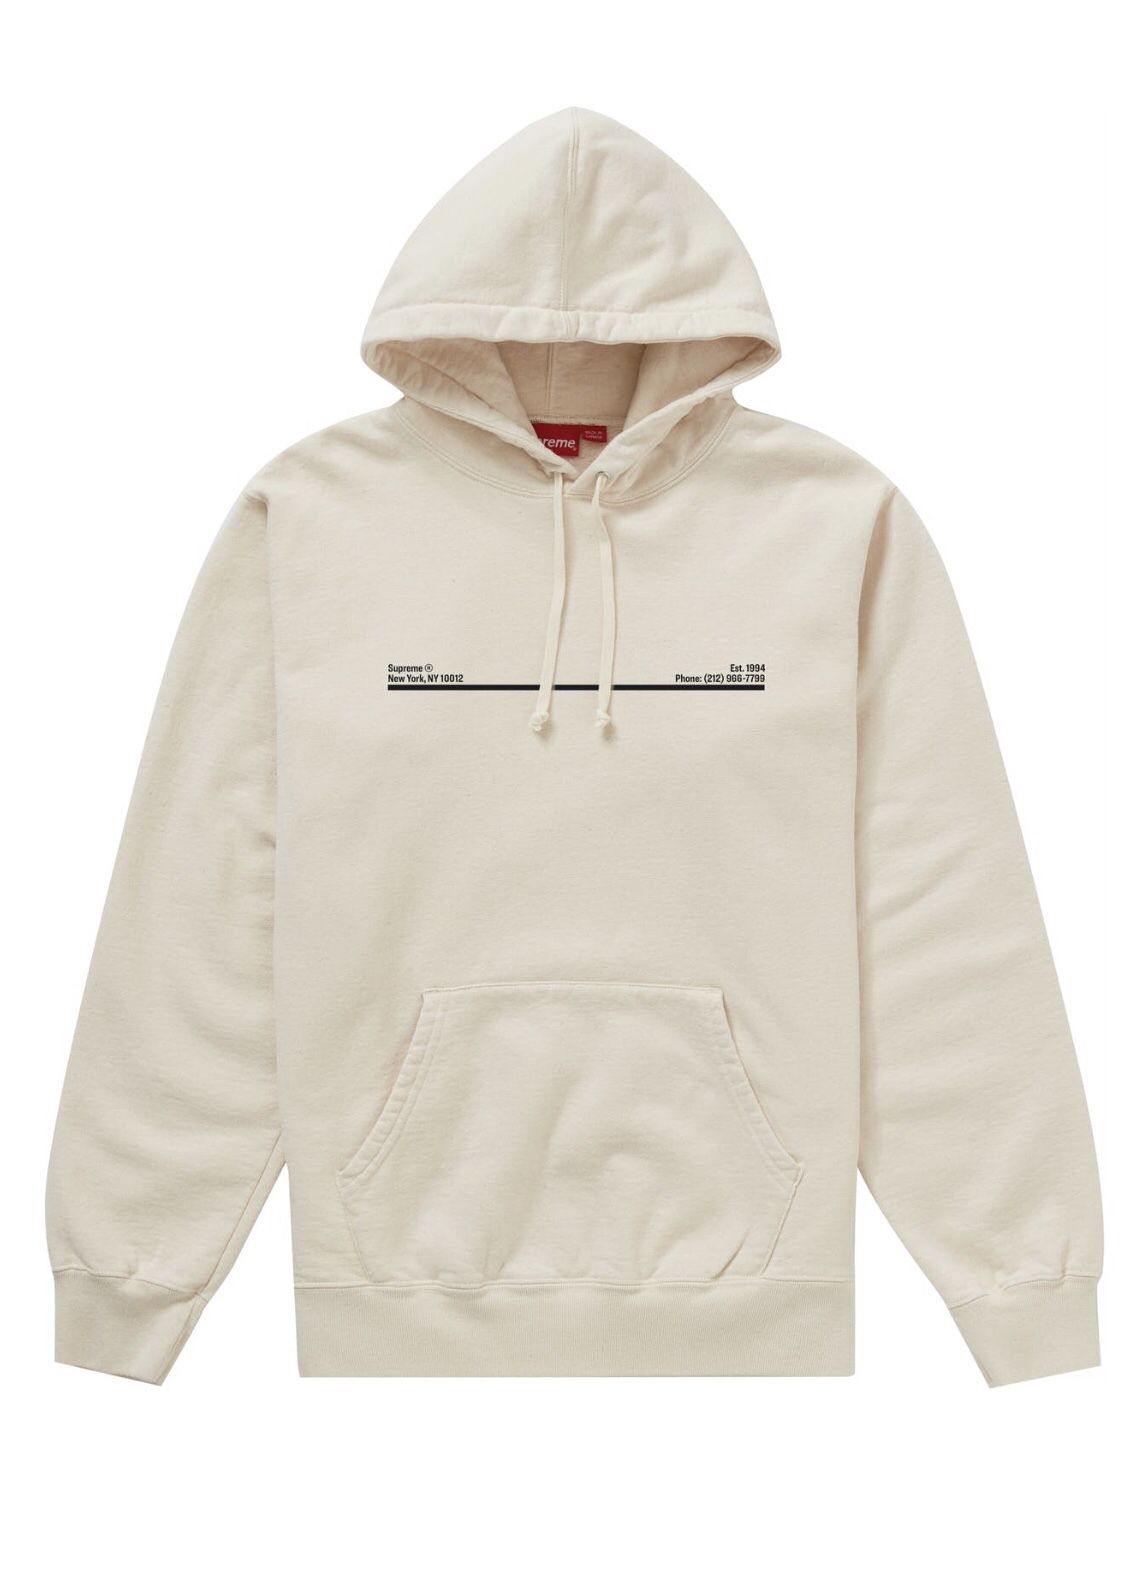 Supreme shop hooded sweatshirt natural color